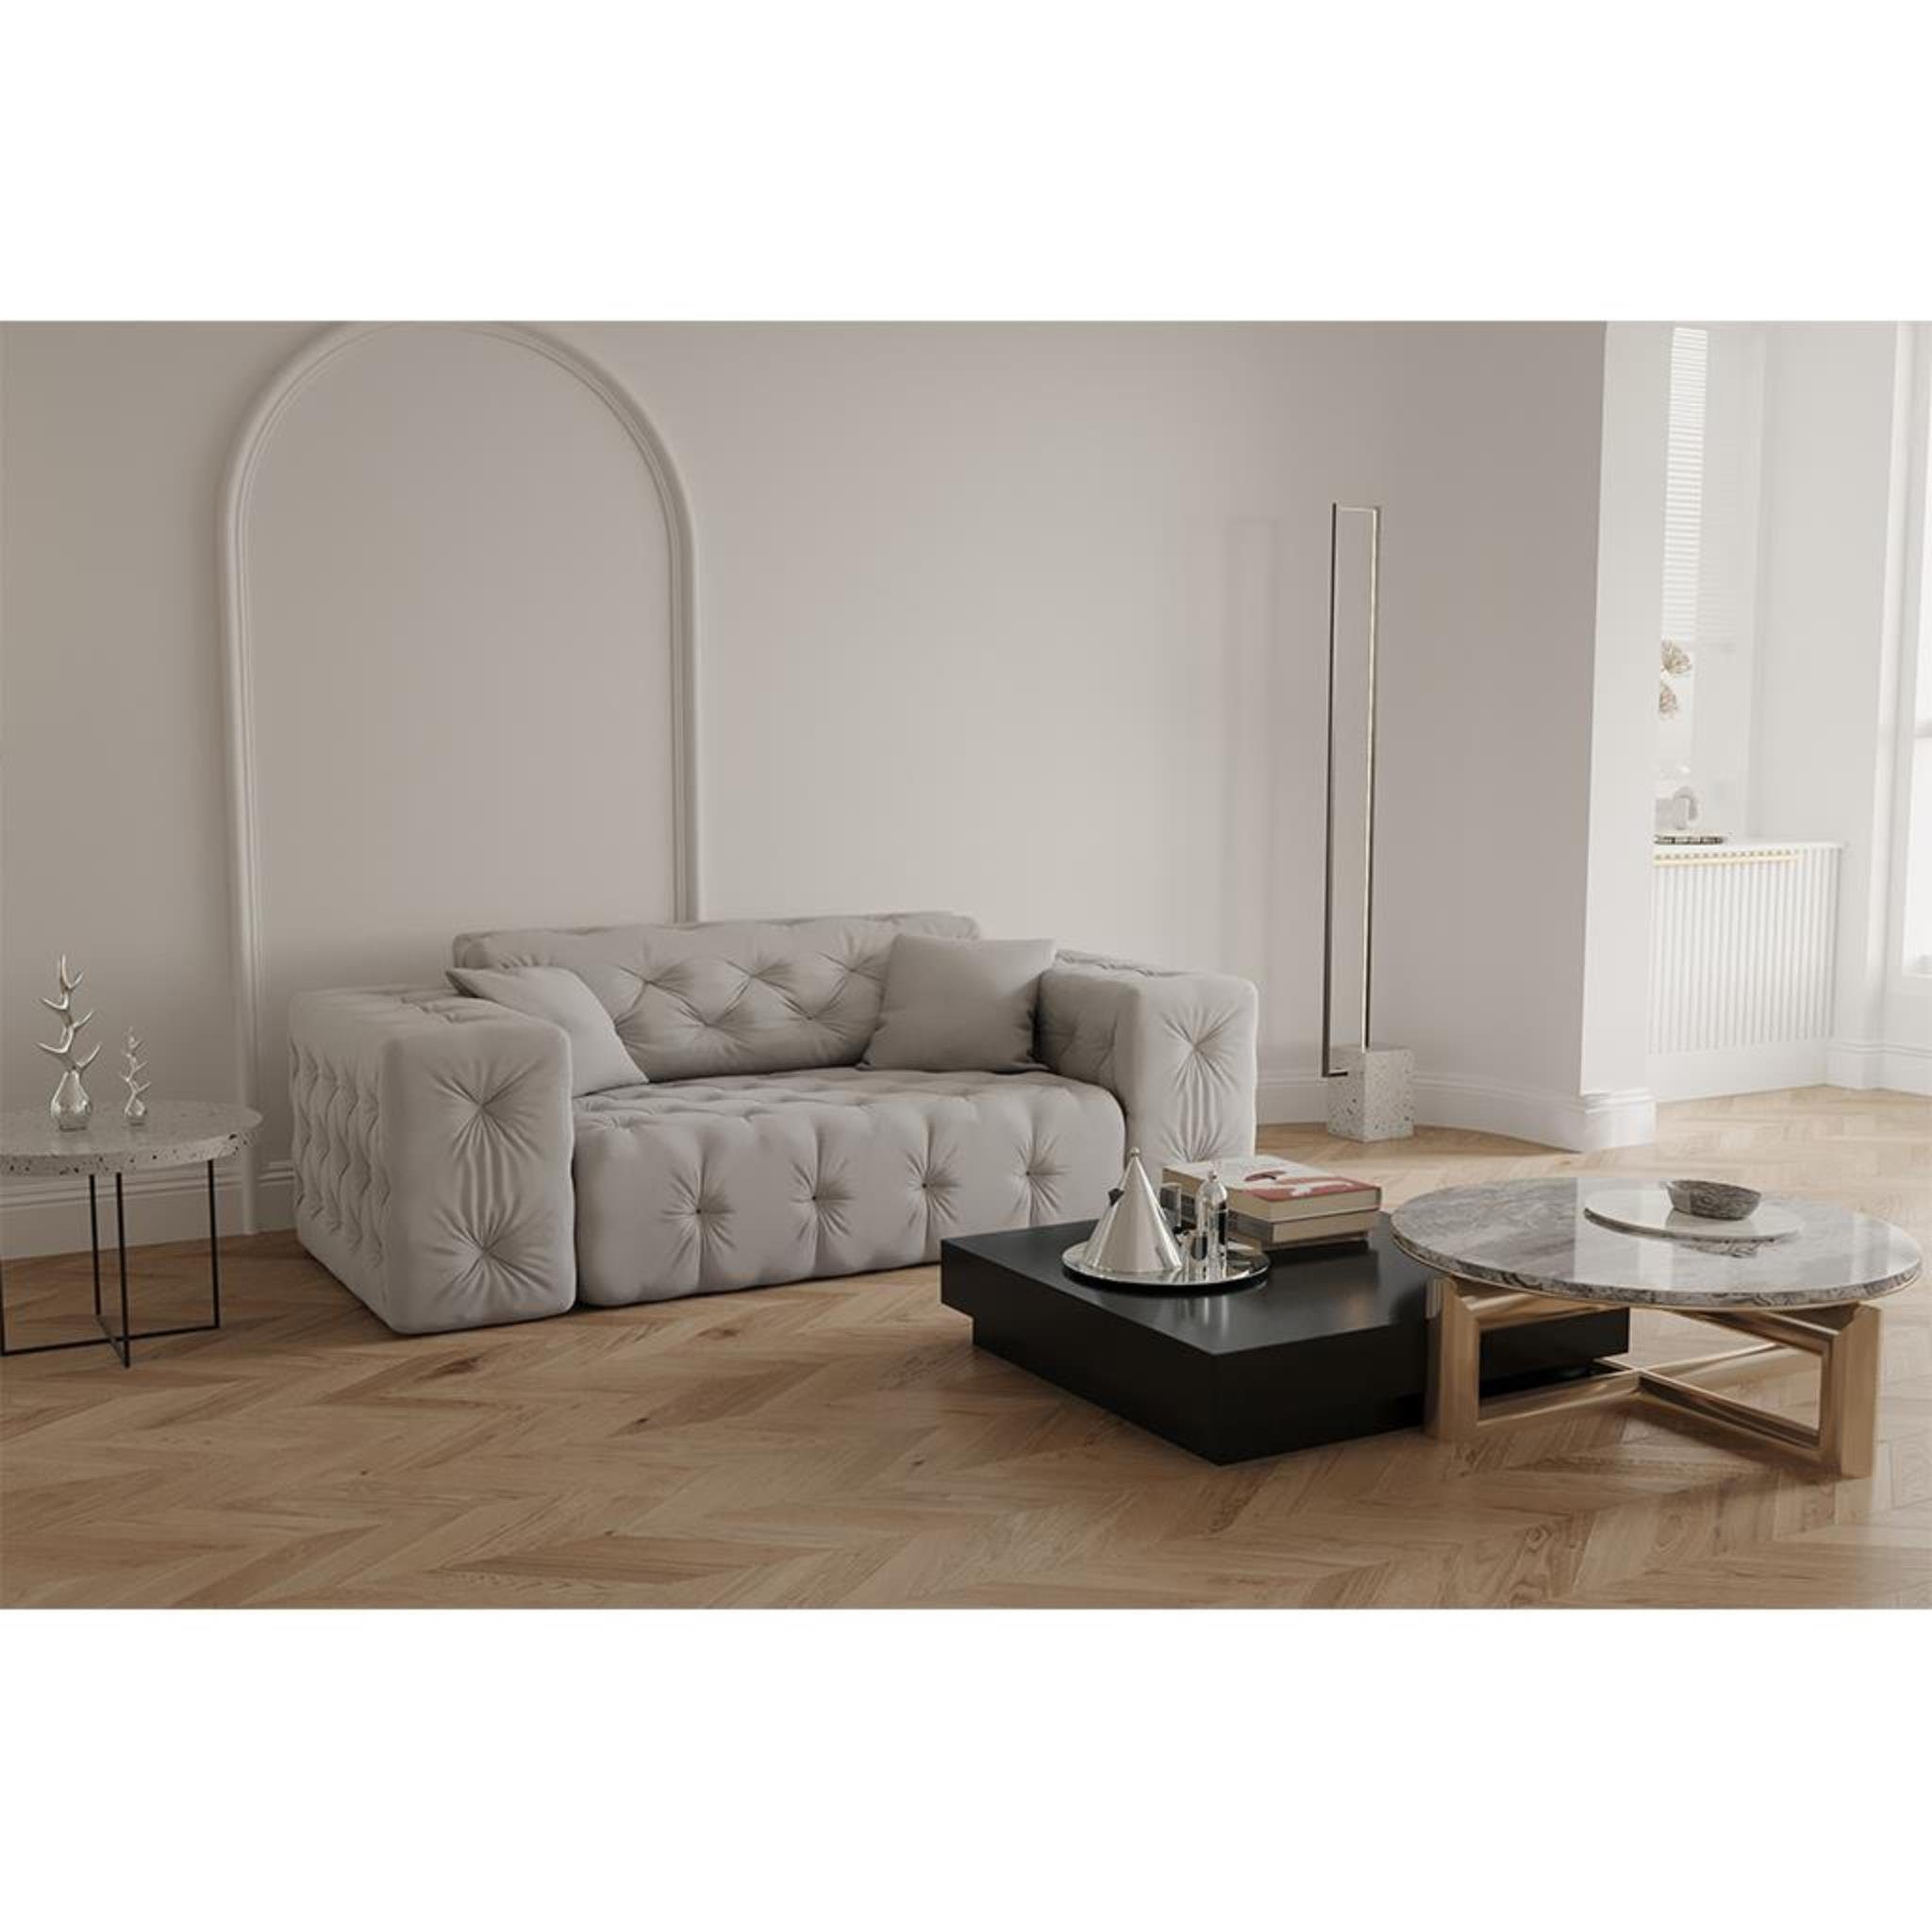 Beautysofa 2-Sitzer Moreno, 2-Sitzer Sofa mit Wellenfedern auf Velvetstoff, im Chesterfield-Design, mit hochwertiger Knopfheftung Opera light grey